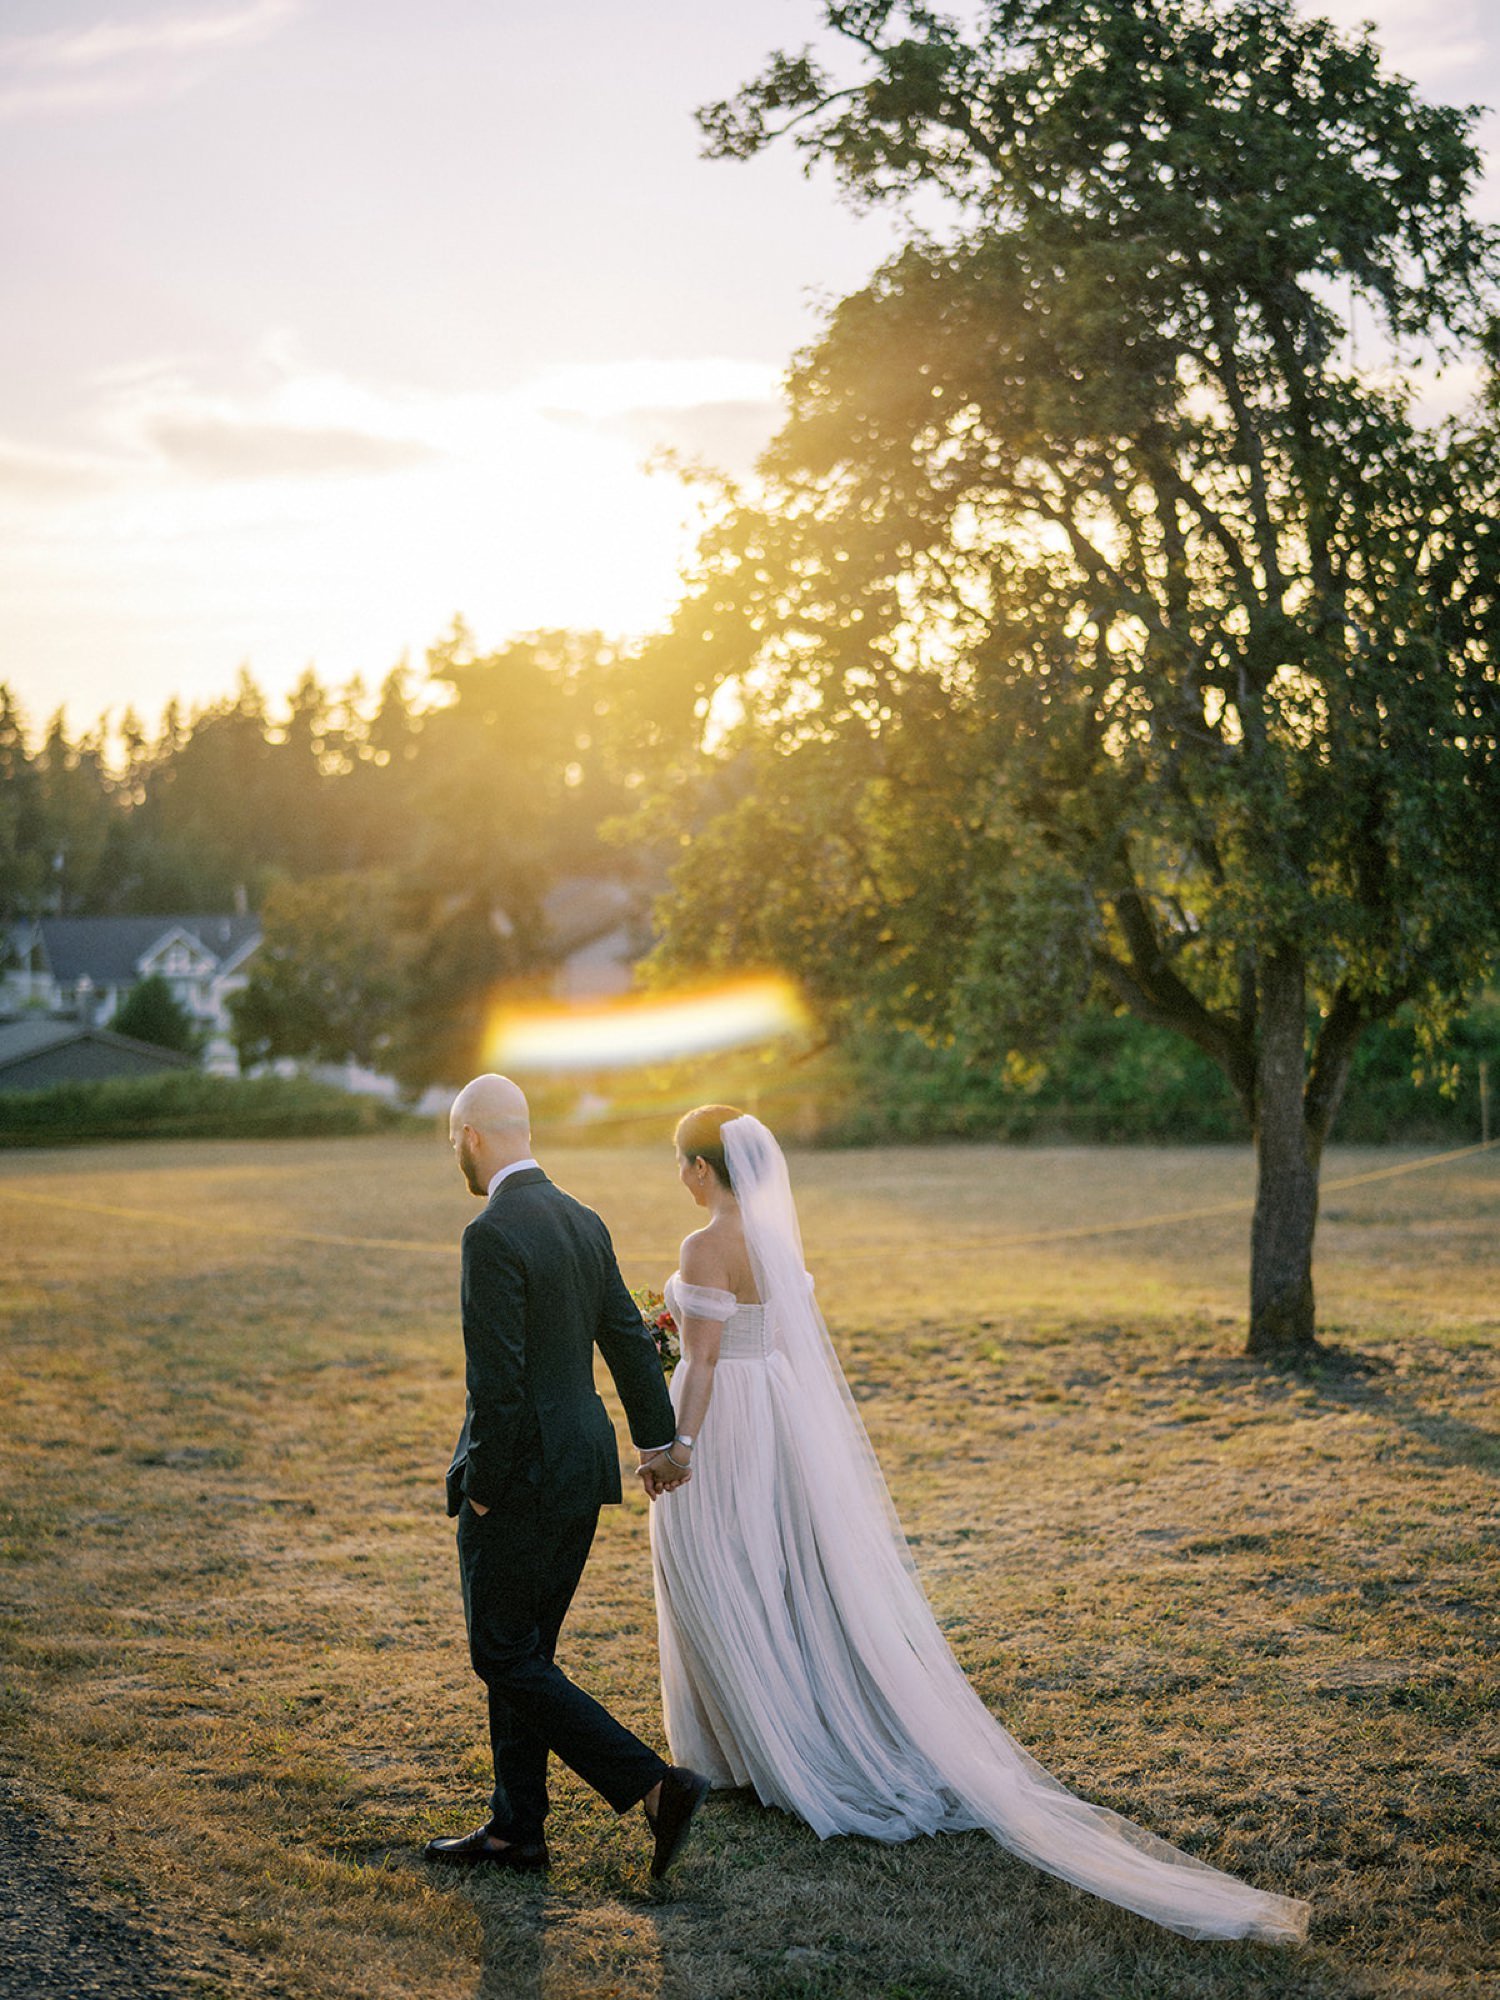 047_warm film-like wedding photos by Seattle wedding photographer Ryan Flynn.jpg